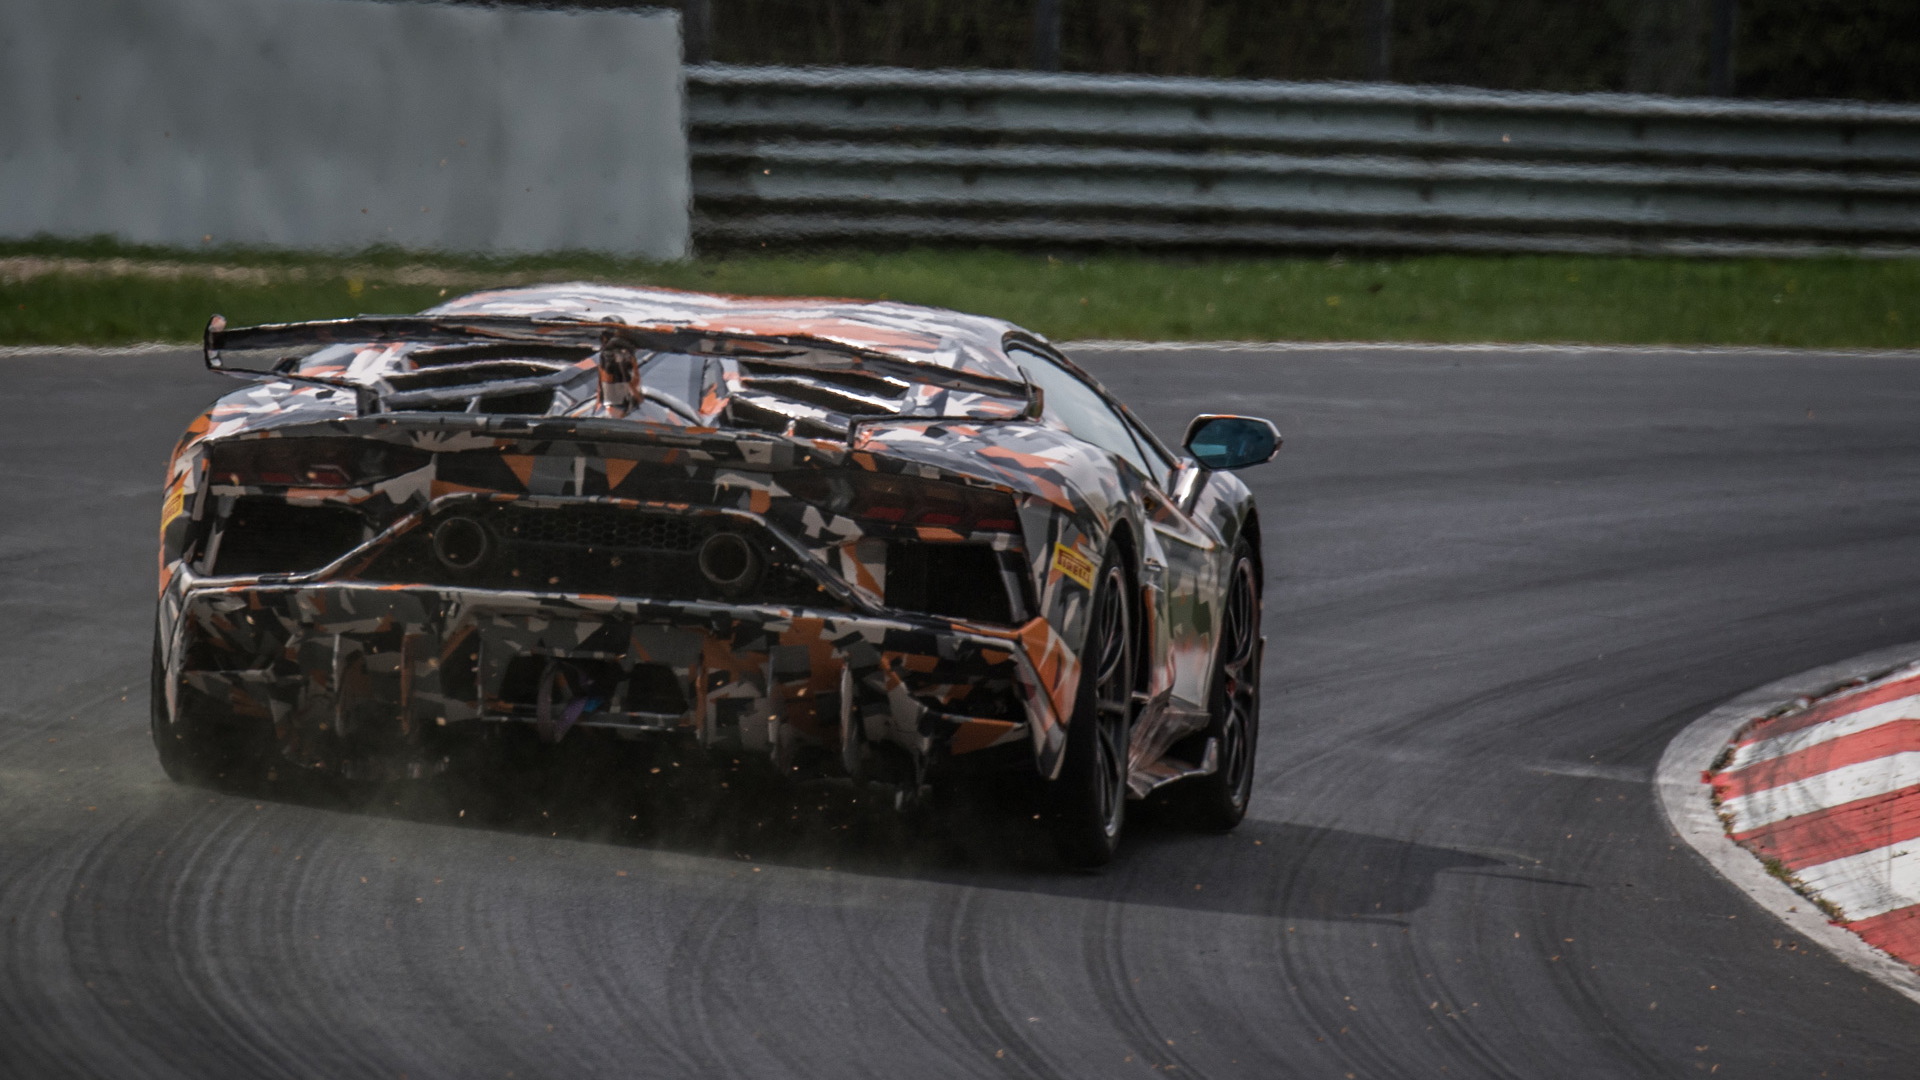 Lamborghini Aventador SVJ during Nürburgring lap record attempt